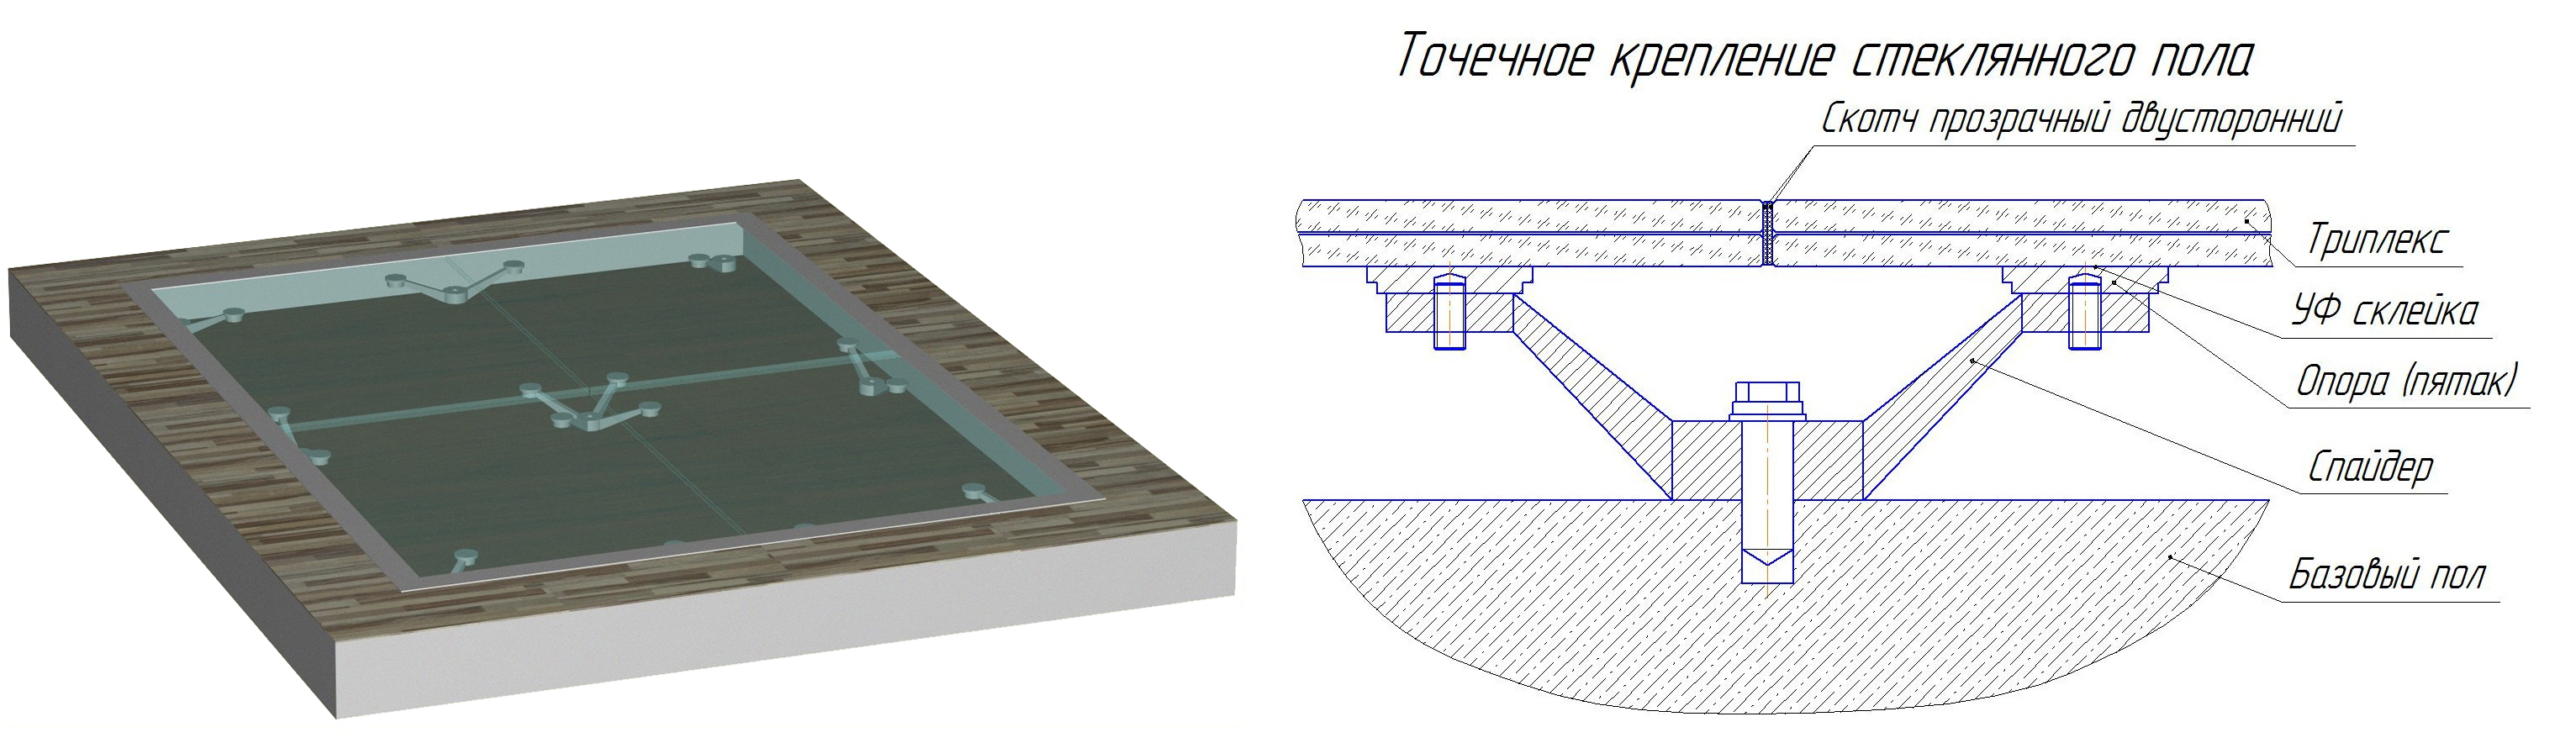 Дизайн двухуровневых потолков из гипсокартона